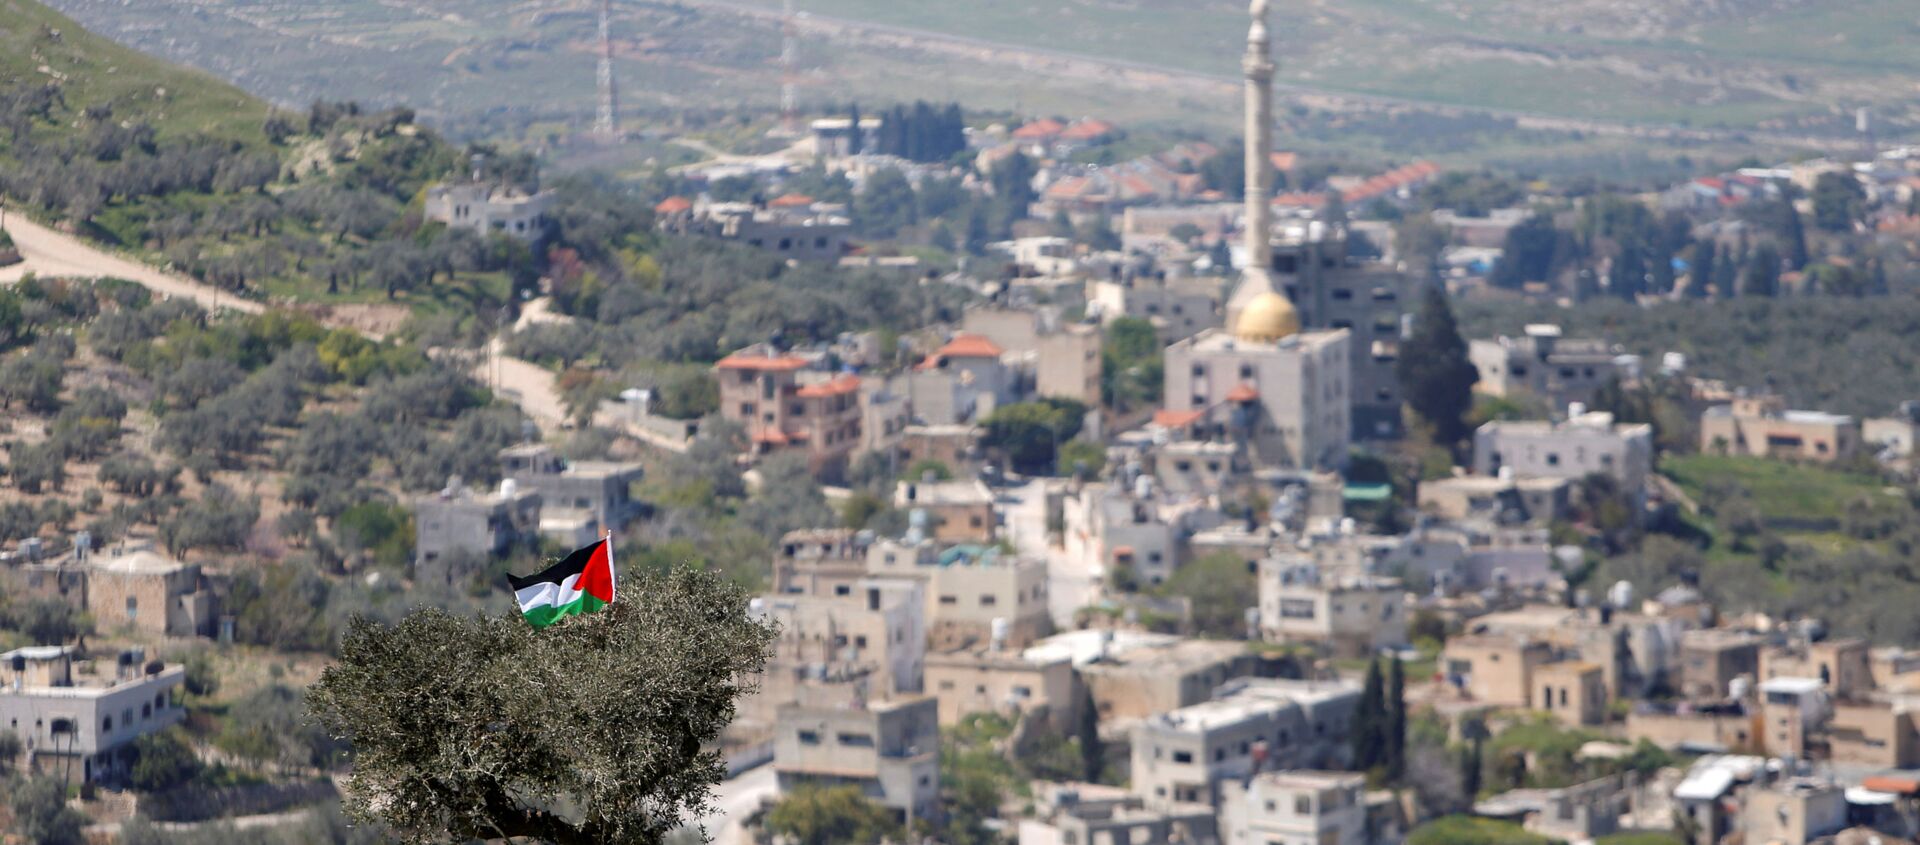 أخبار فلسطين - إسرائيل - مستطونة إسرائيلية في الناقورة بالقرب من نابلس، الضفة الغربية، 29 مارس 2021 - سبوتنيك عربي, 1920, 23.06.2021